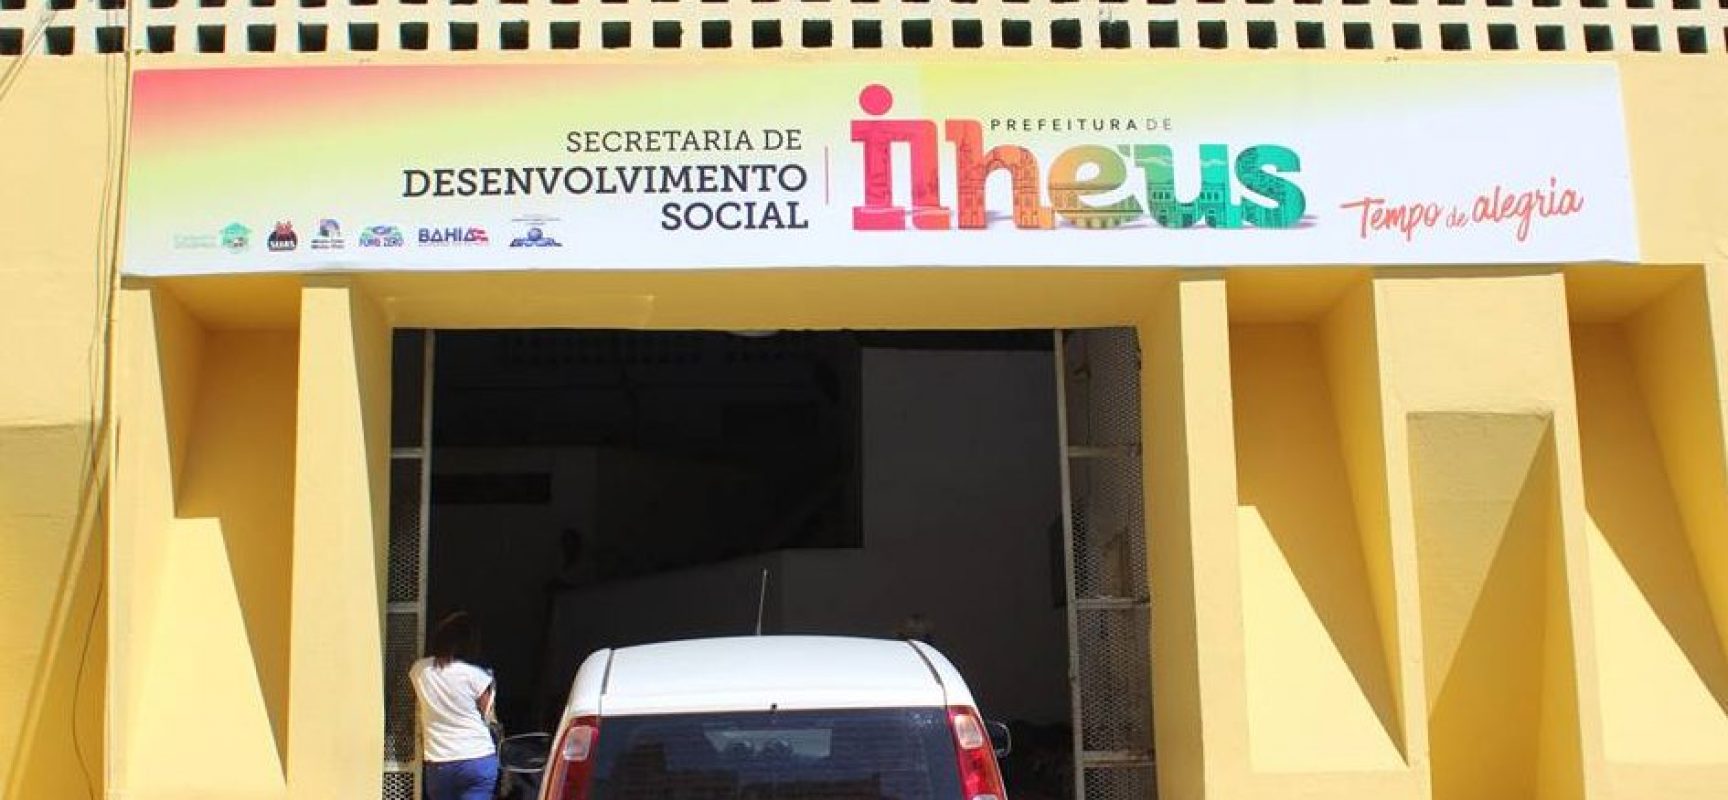 Prefeitura de Ilhéus realiza Mutirão  do Passe Livre com Avaliação Médica